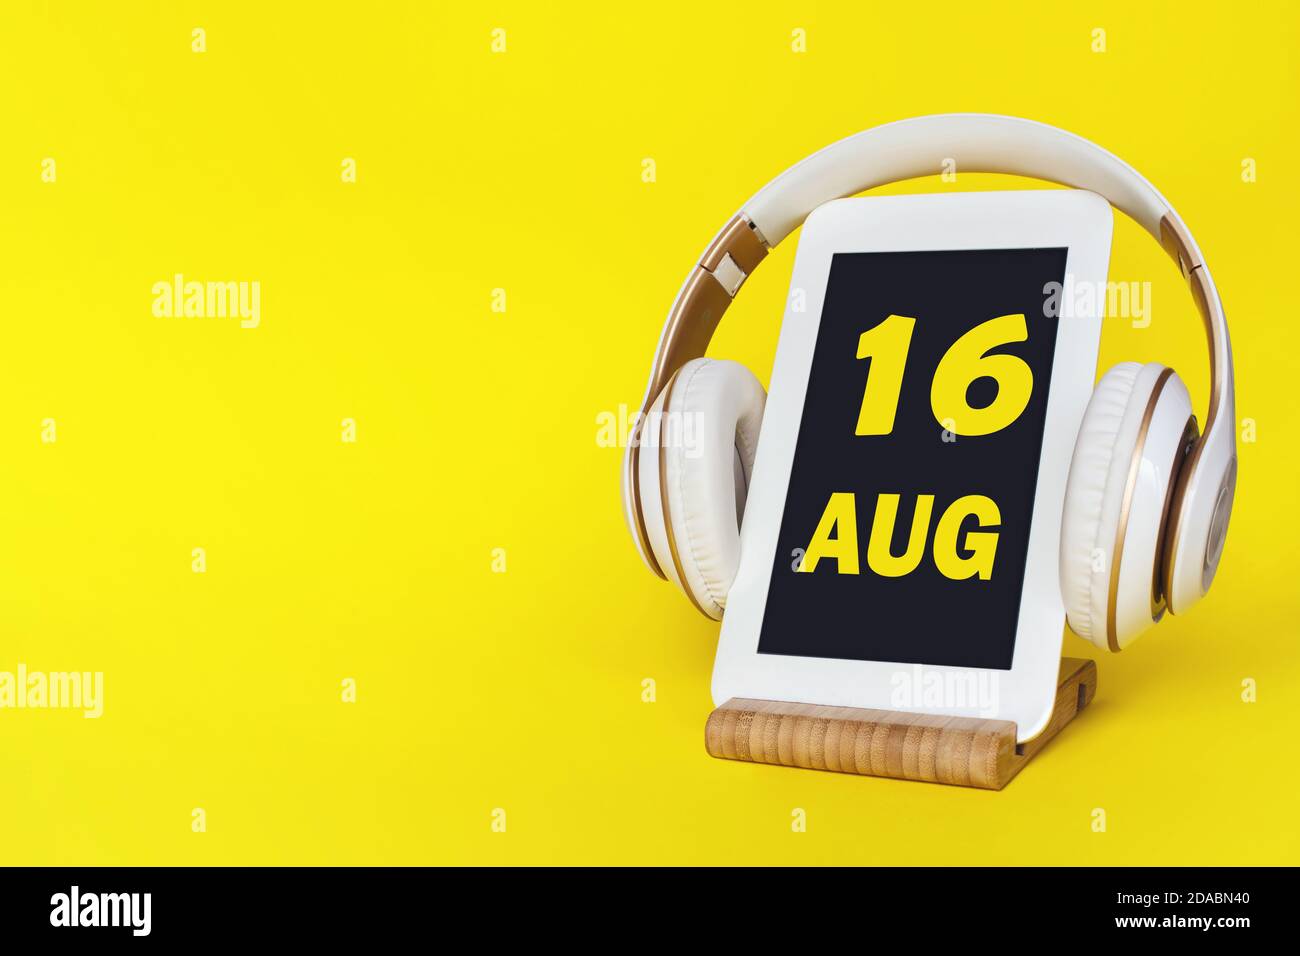 16 août. Jour 16 du mois, date du calendrier. Casque élégant et tablette moderne sur fond jaune. Espace pour le texte. Éducation, technologie, farce Banque D'Images